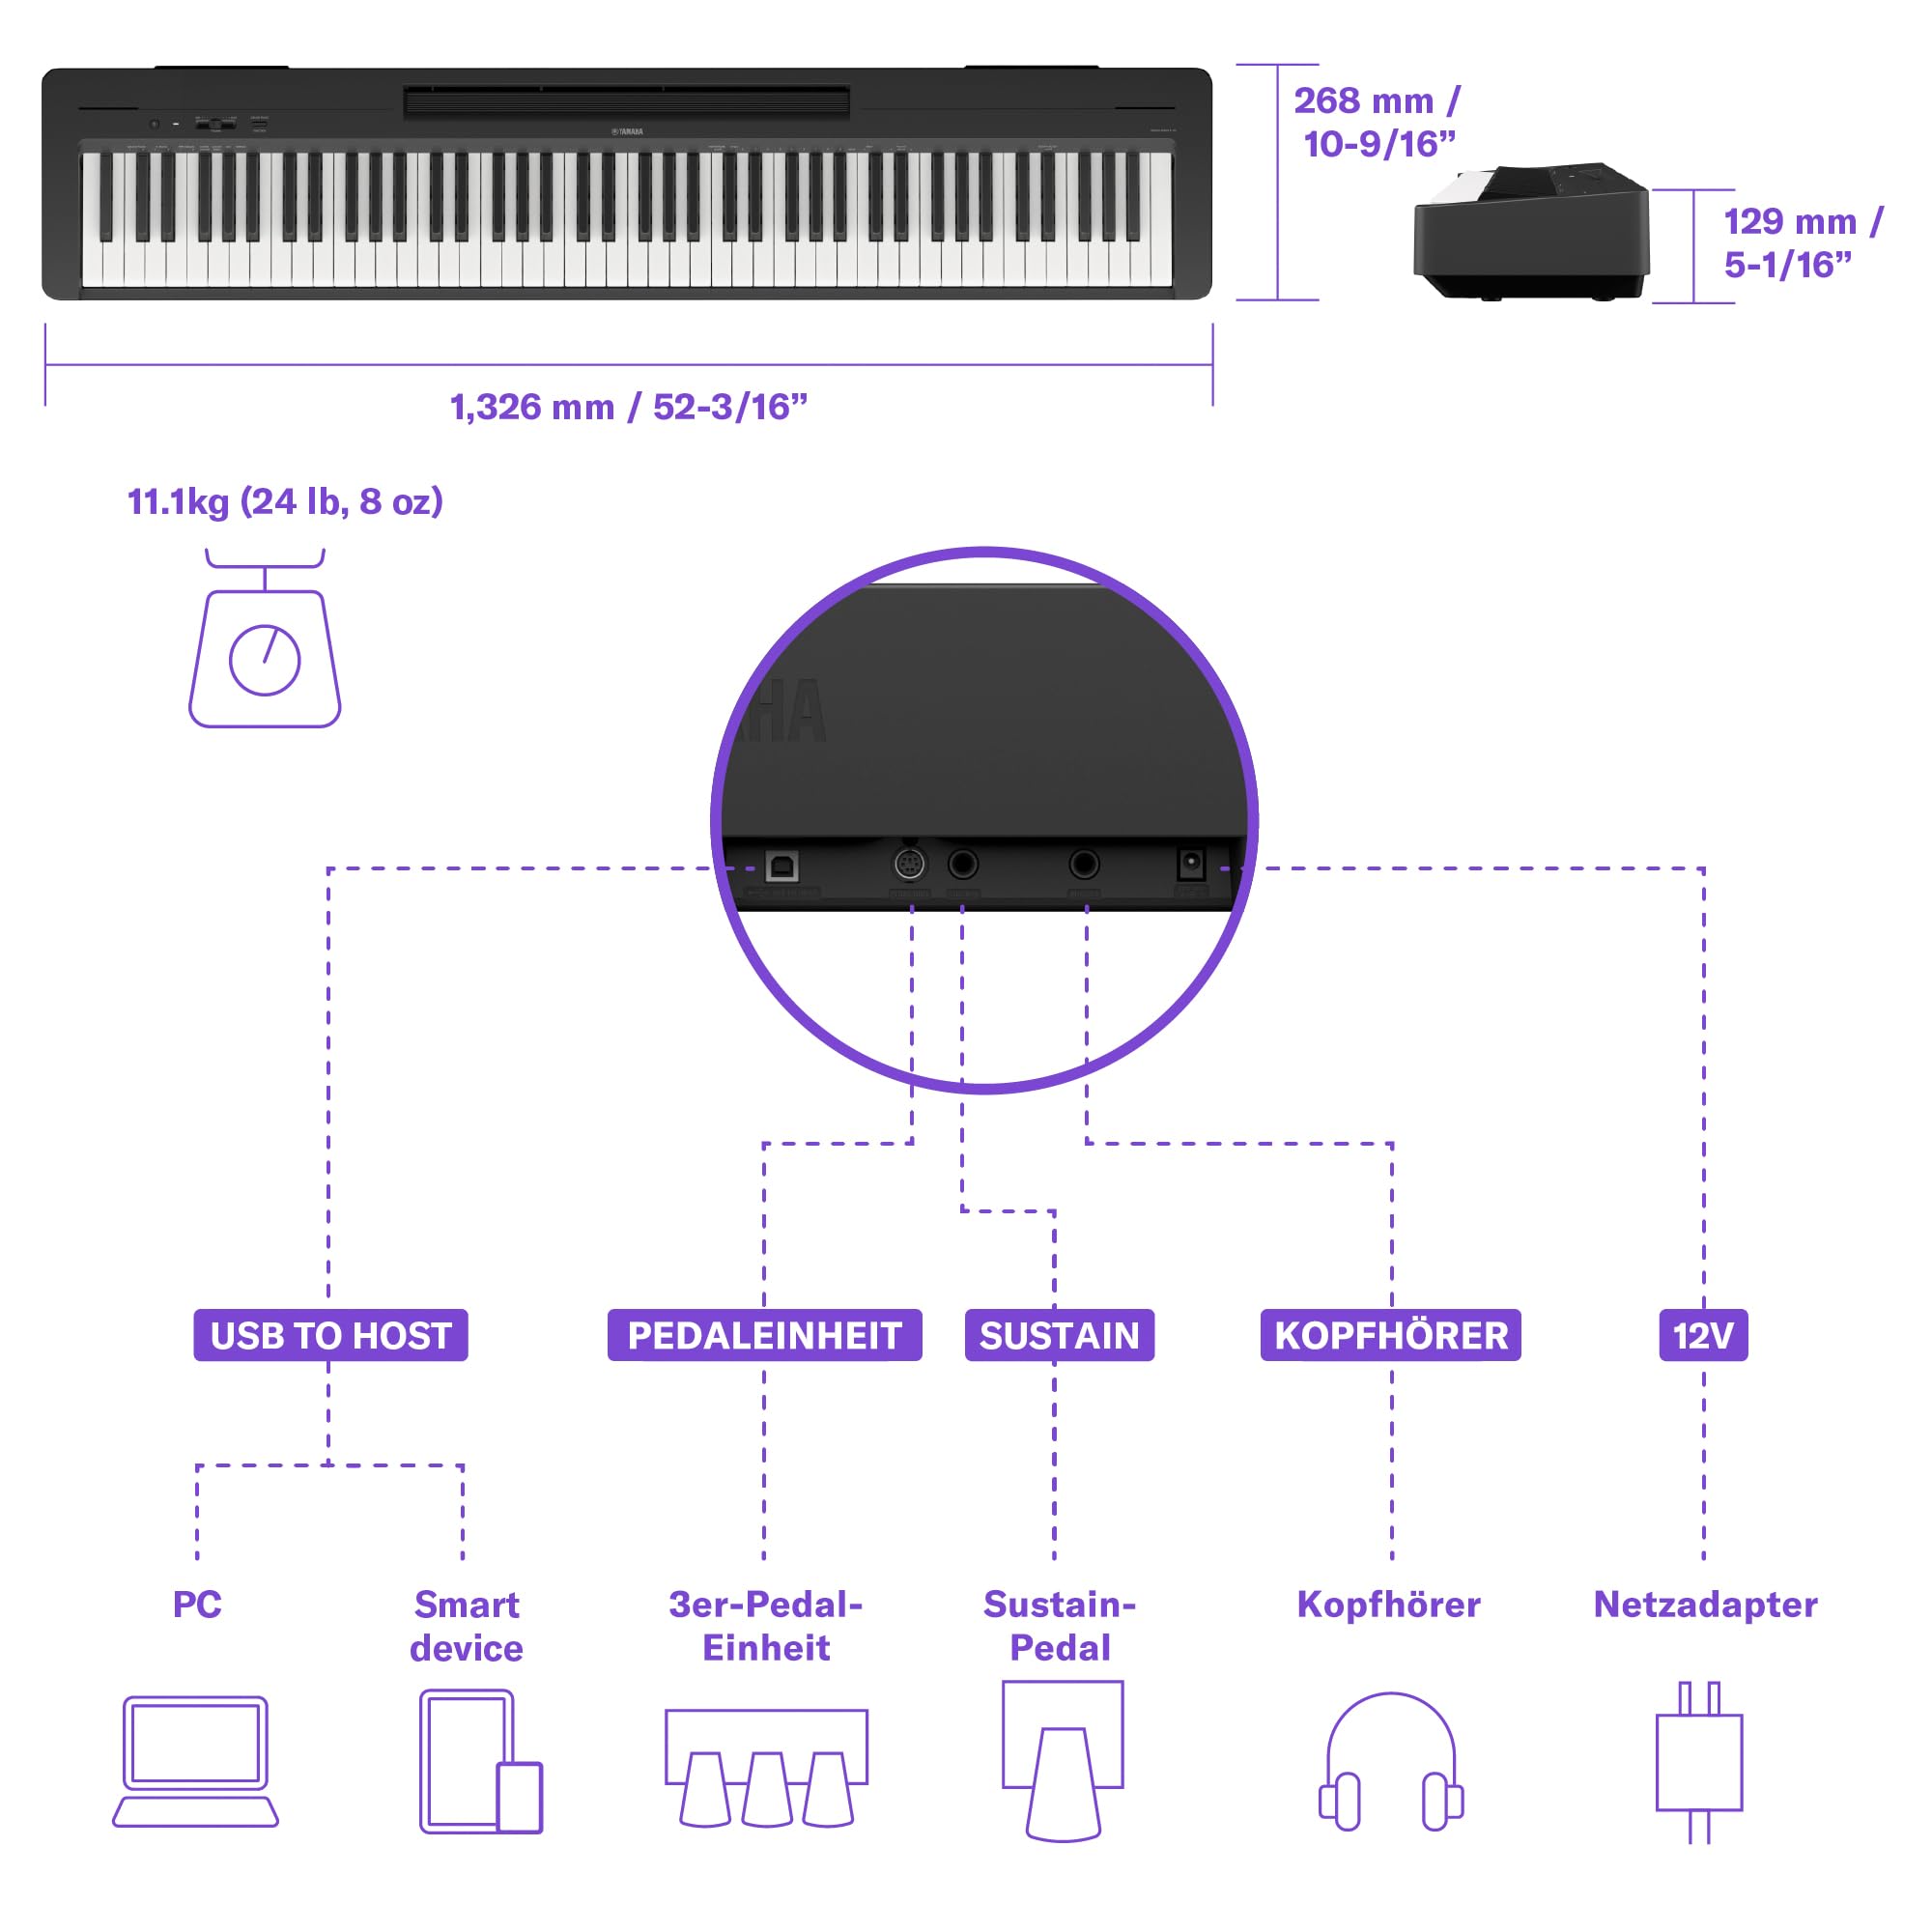 Yamaha P-145 Digital Piano, Schwarz – Leichtes und tragbares Digital Piano mit der Graded-Hammer-Compact Tastatur mit 88 gewichteten Tasten und 10 Instrumentenklängen